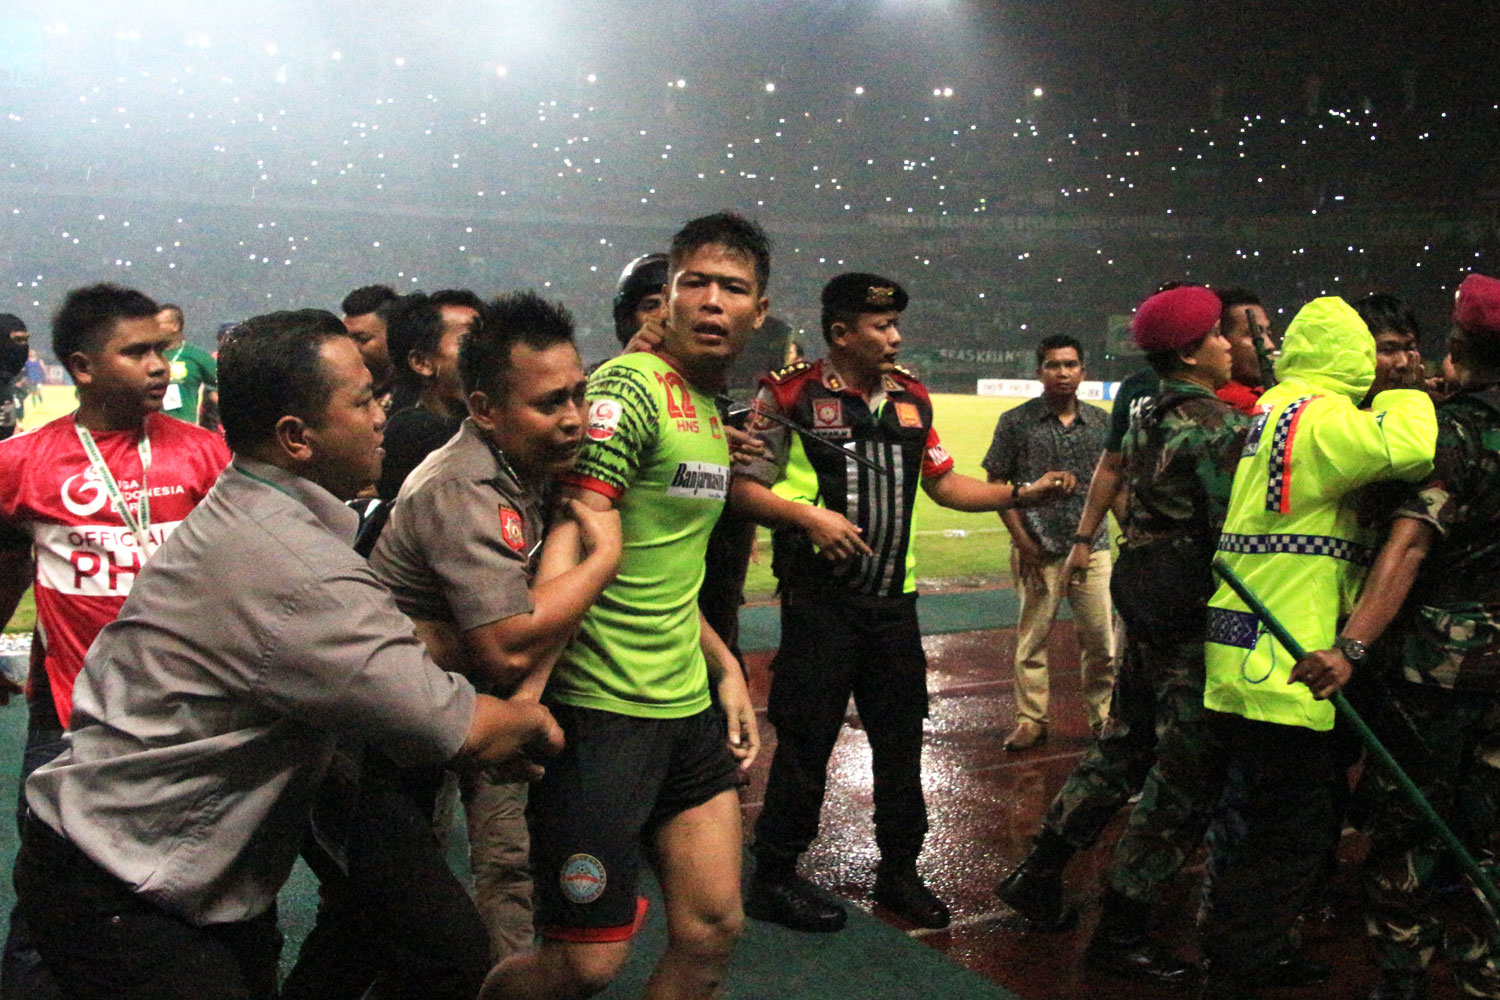 Penjaga gawang Martapura FC, Ali Budi Raharjo harus mendapat kawalan petugas ketika meninggalkan lapangan seusai terlibat keributan dengan Bonek, Kamis (27/7) malam. (Foto: Farid/ngopibareng.id)